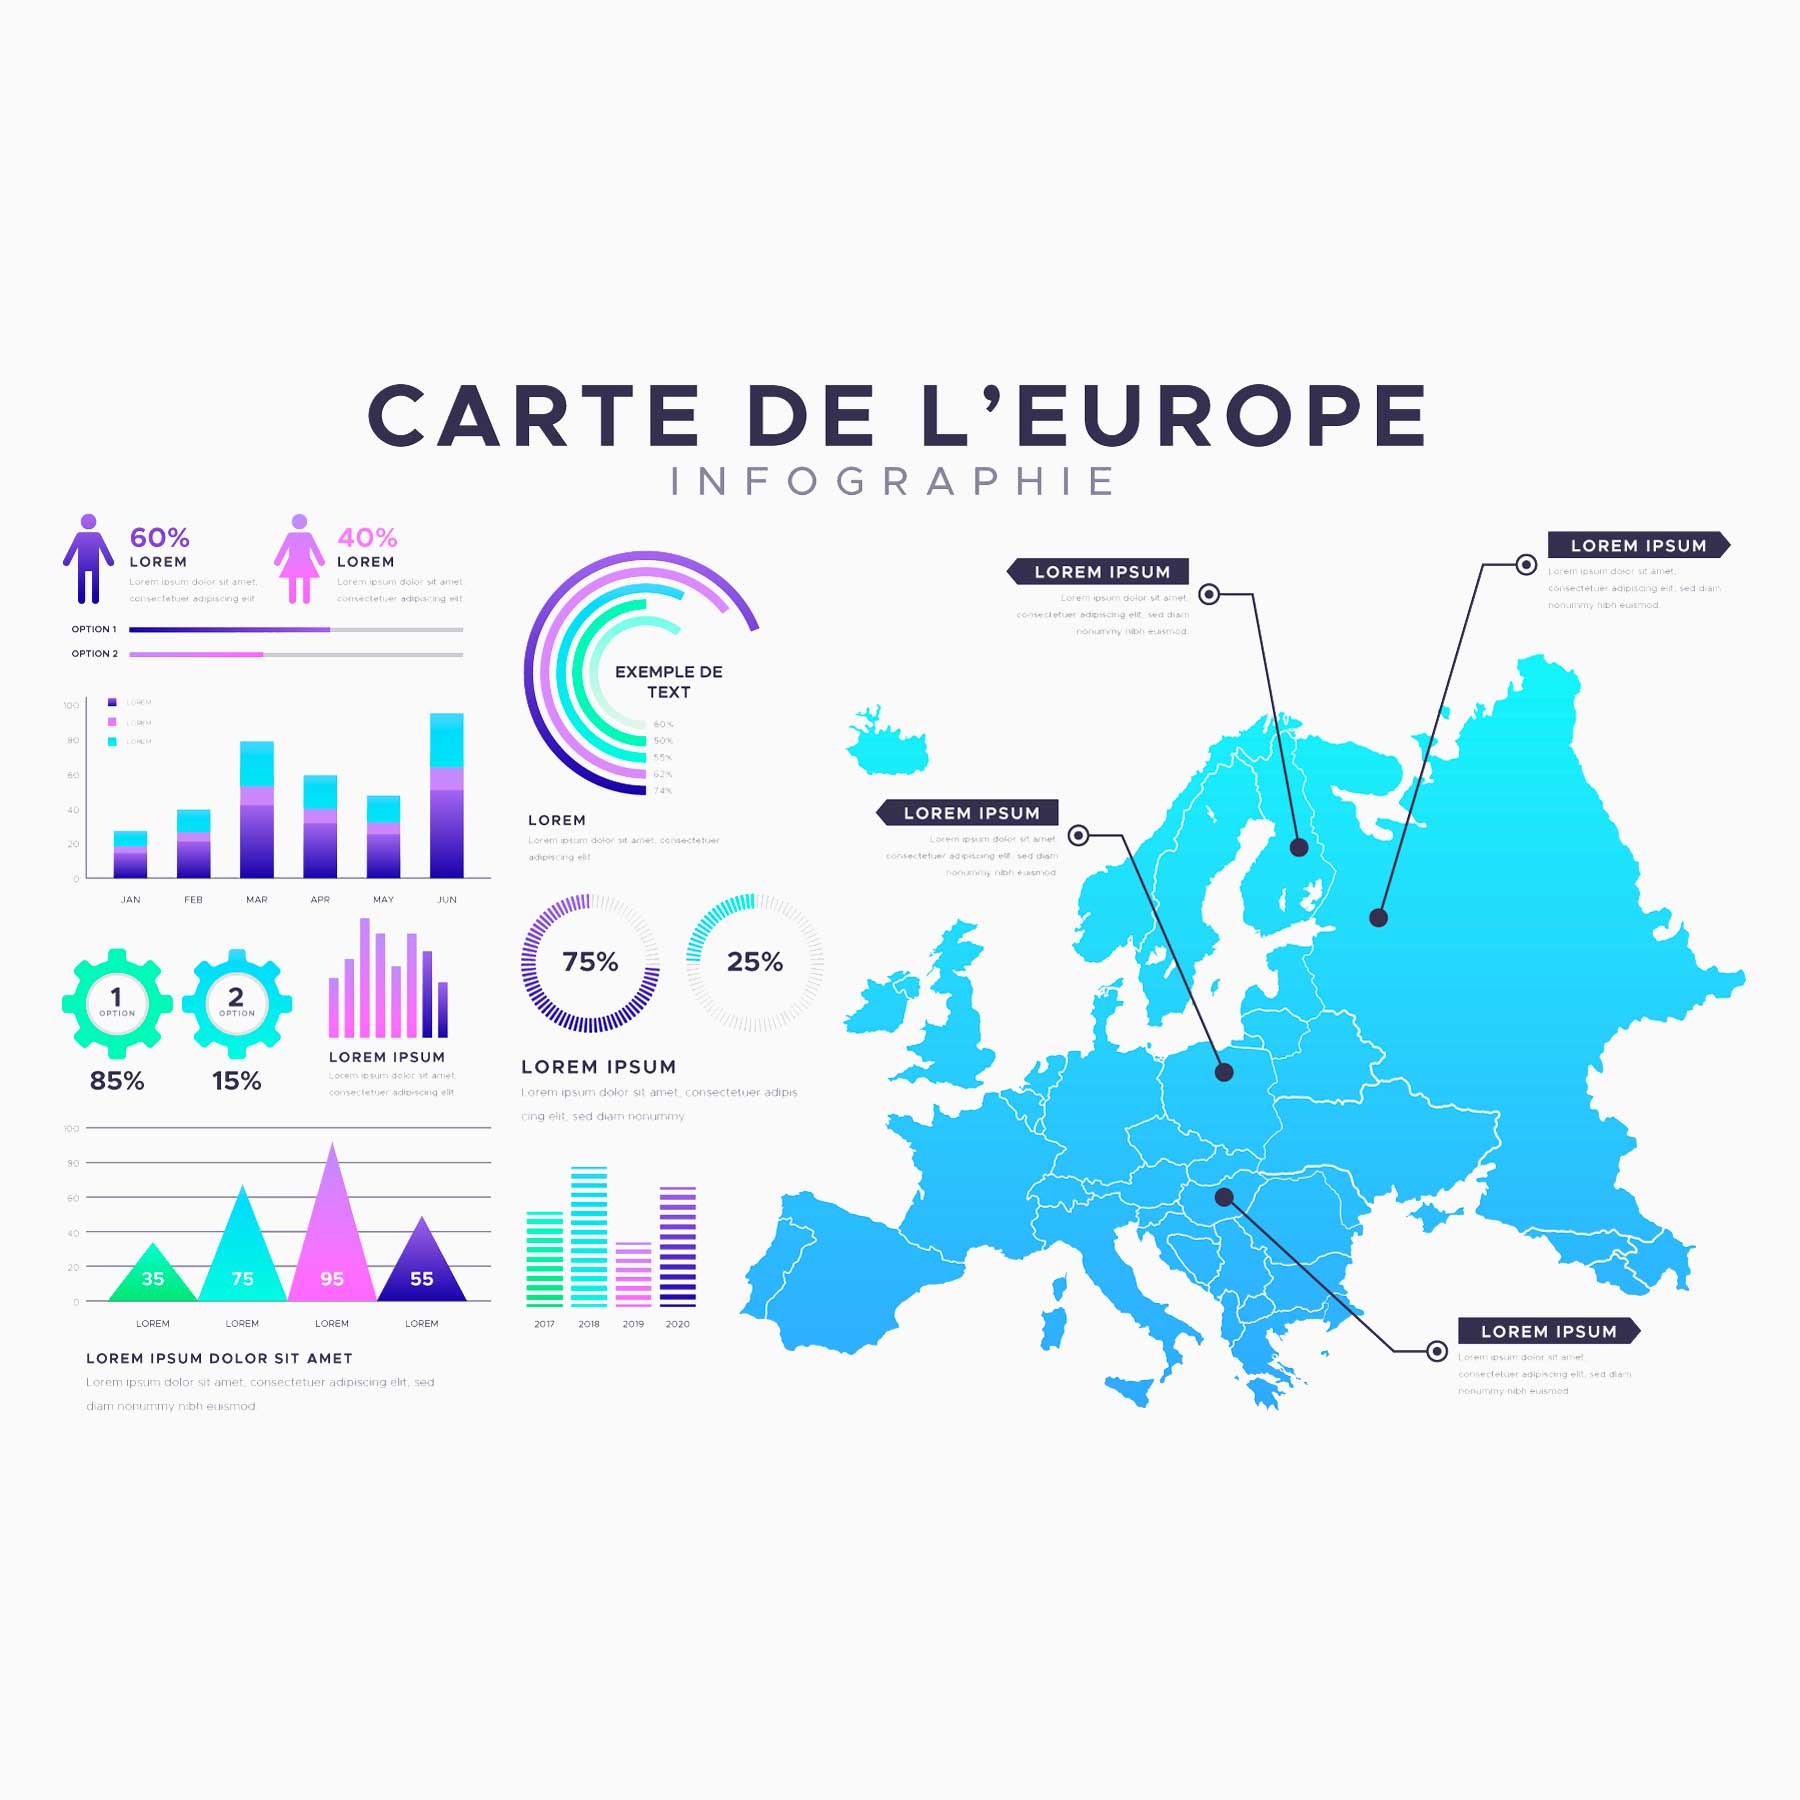 Identité visuel autour de la carte d'europe en vue d'une appel d'offre